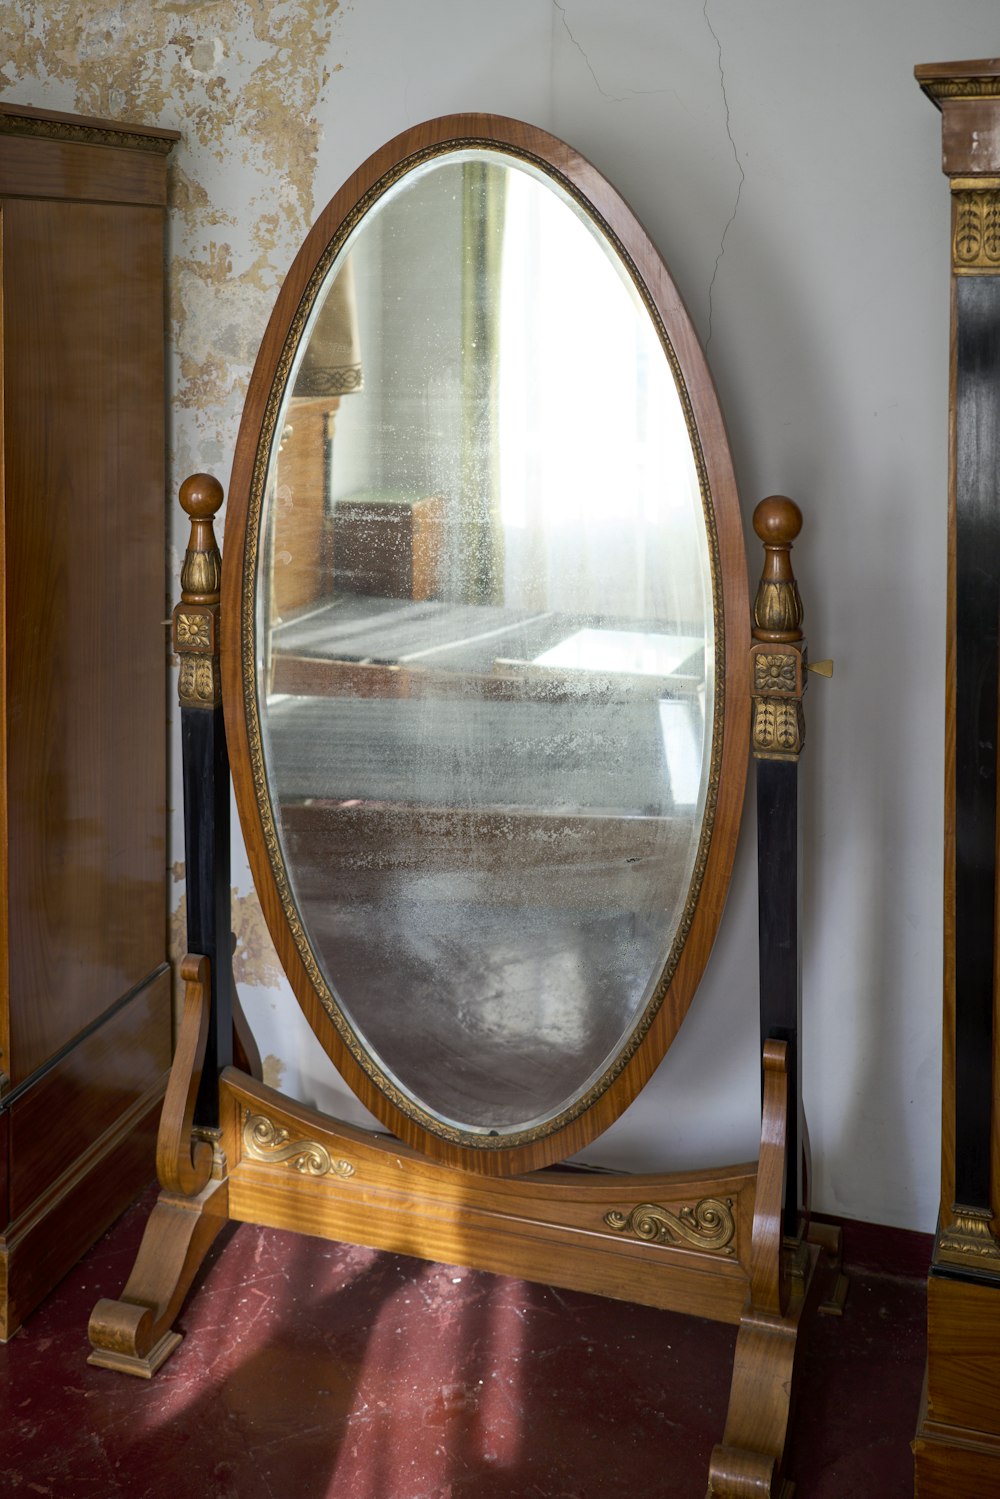 나무 스탠드 위에 앉아 있는 커다란 둥근 거울